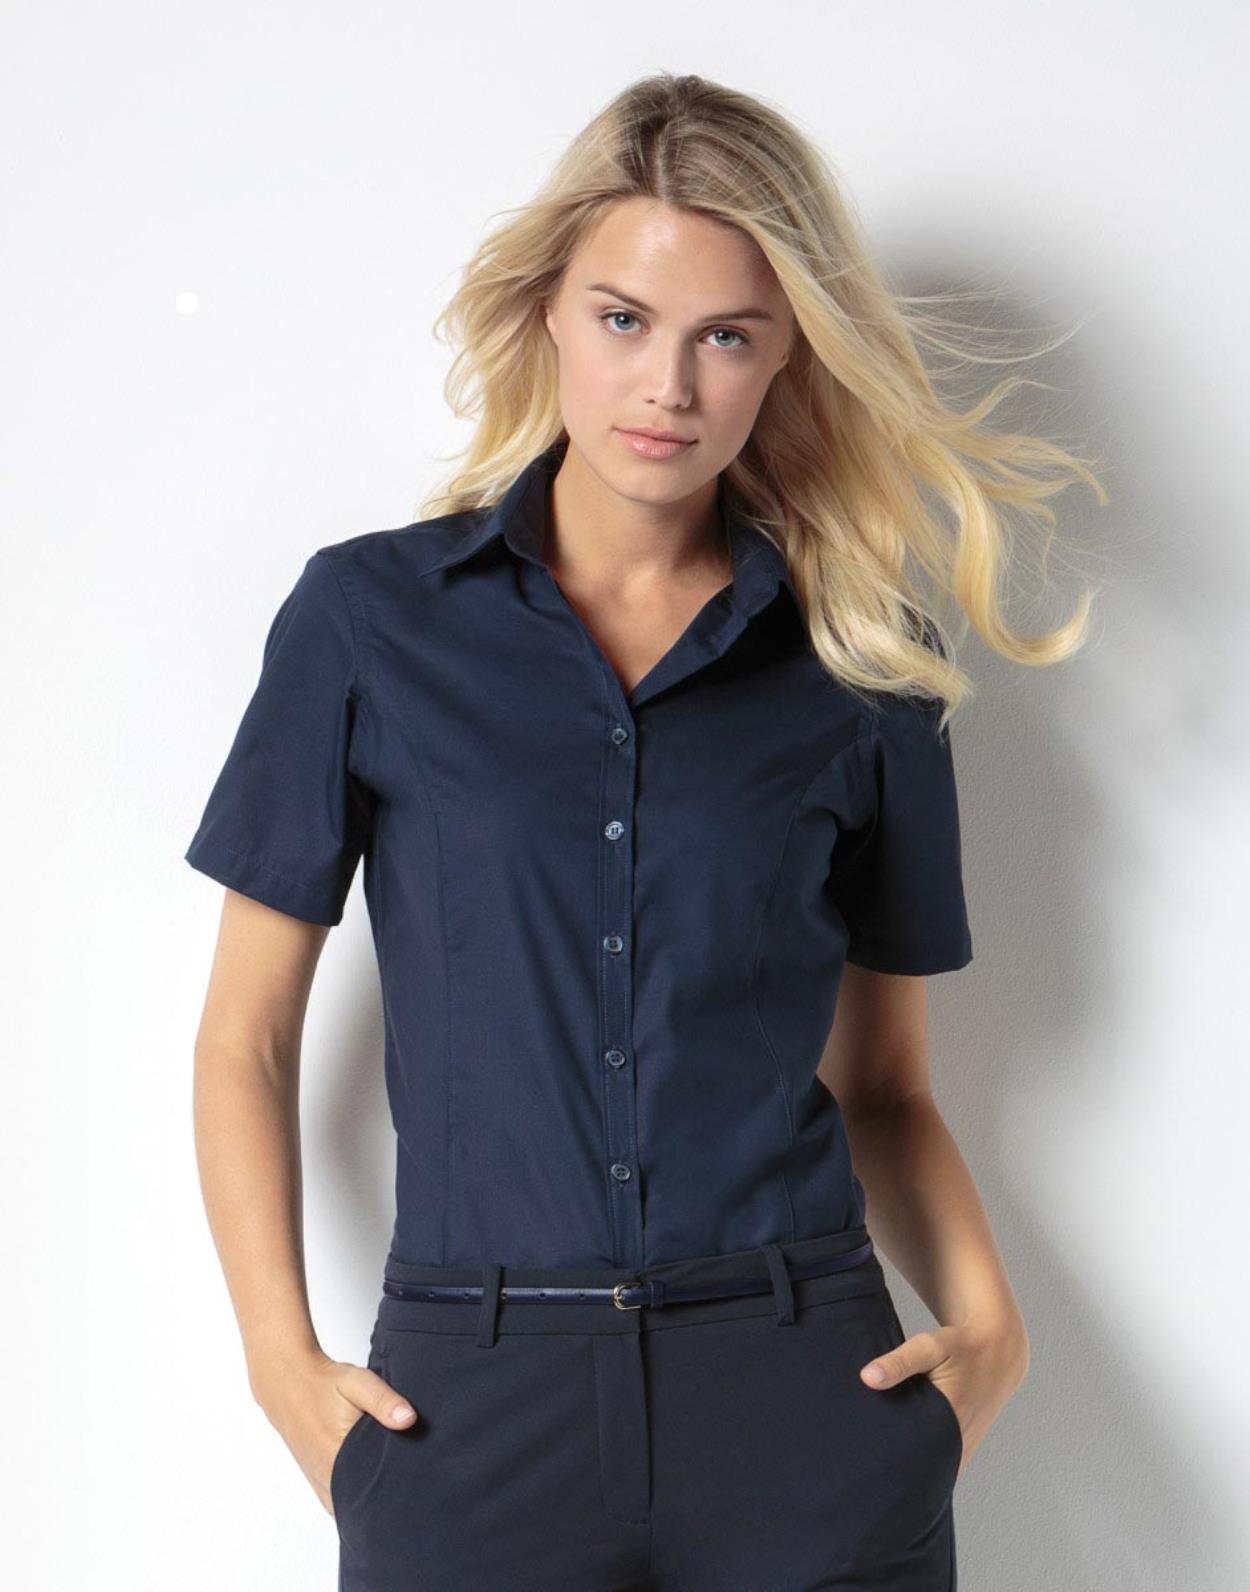 KK742 Women's business blouse short sleeve Image 1